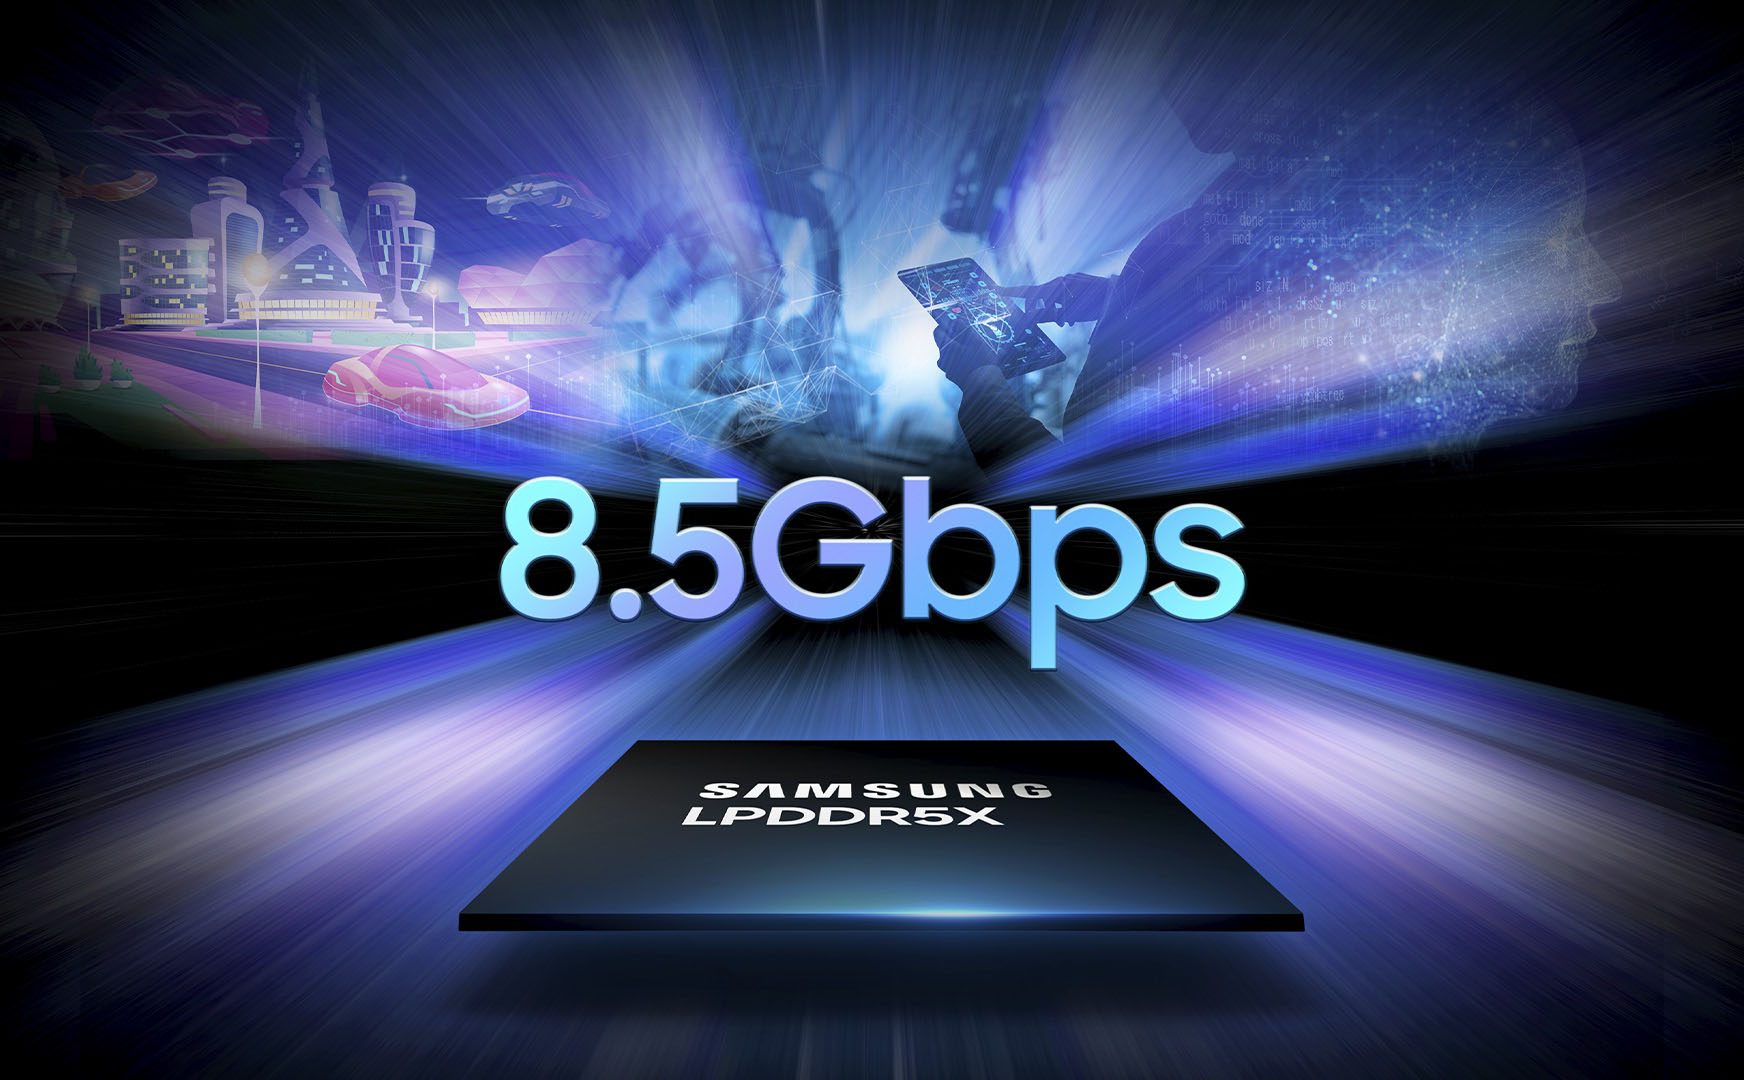 Công nghệ LPDDR5X của Samsung đạt được tốc độ lên đến 8.5Gbps